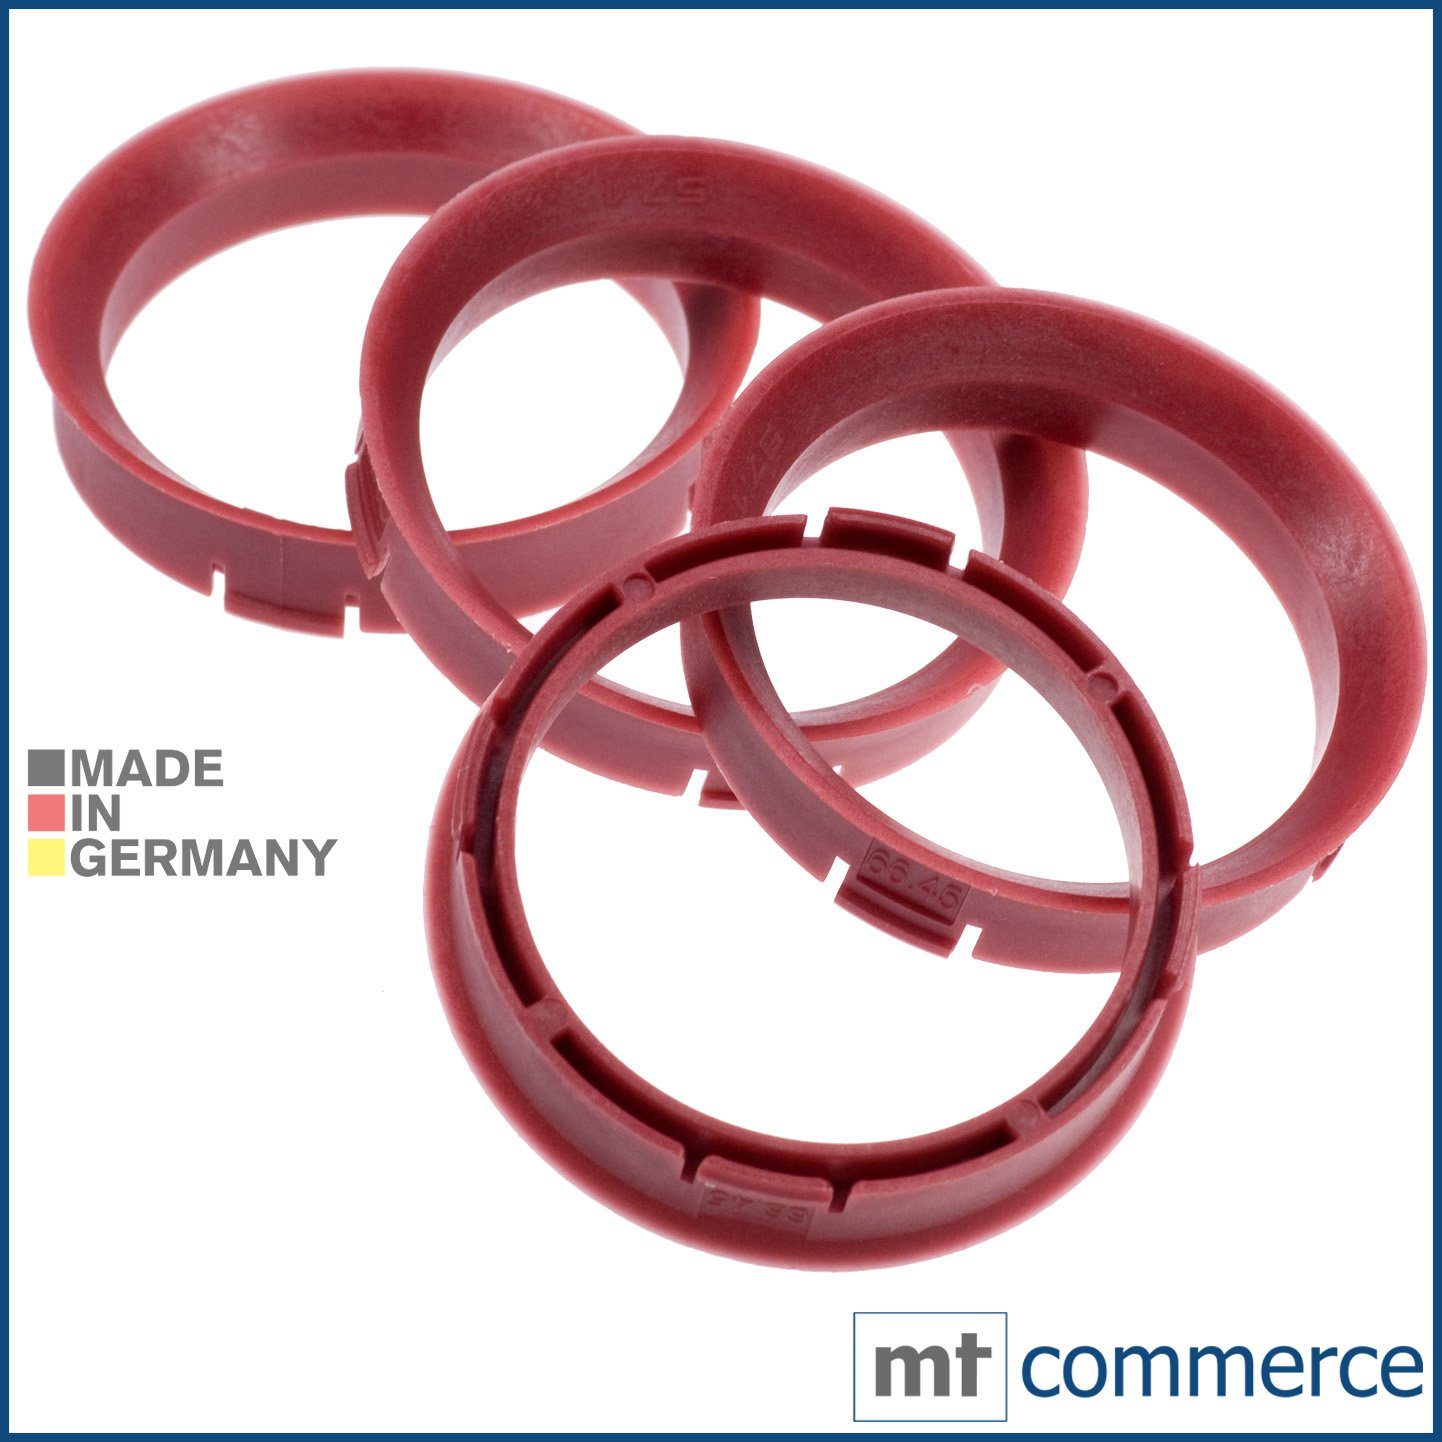 RKC Reifenstift 4X Zentrierringe rot Made Maße: 57,1 mm Ringe in Germany, 67,45 x Felgen